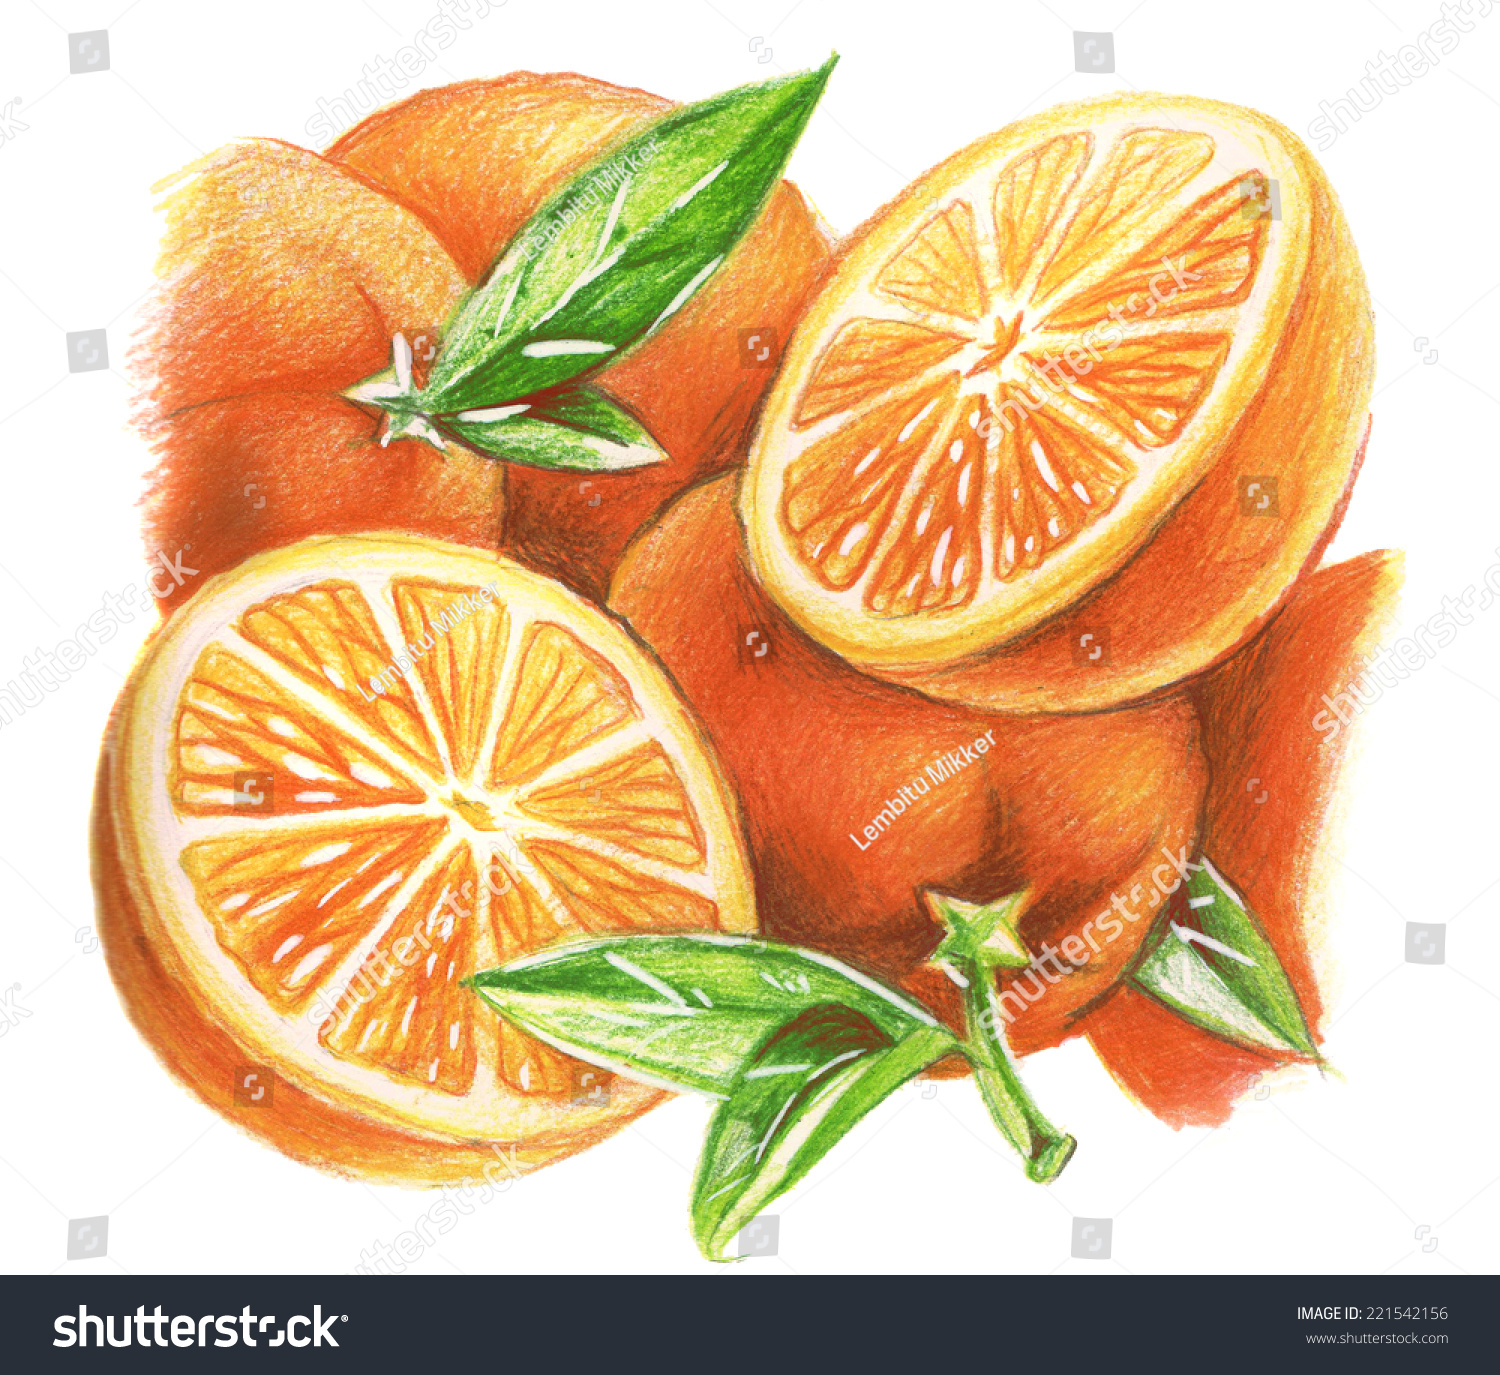 Картинки апельсина в разрезе нарисованные